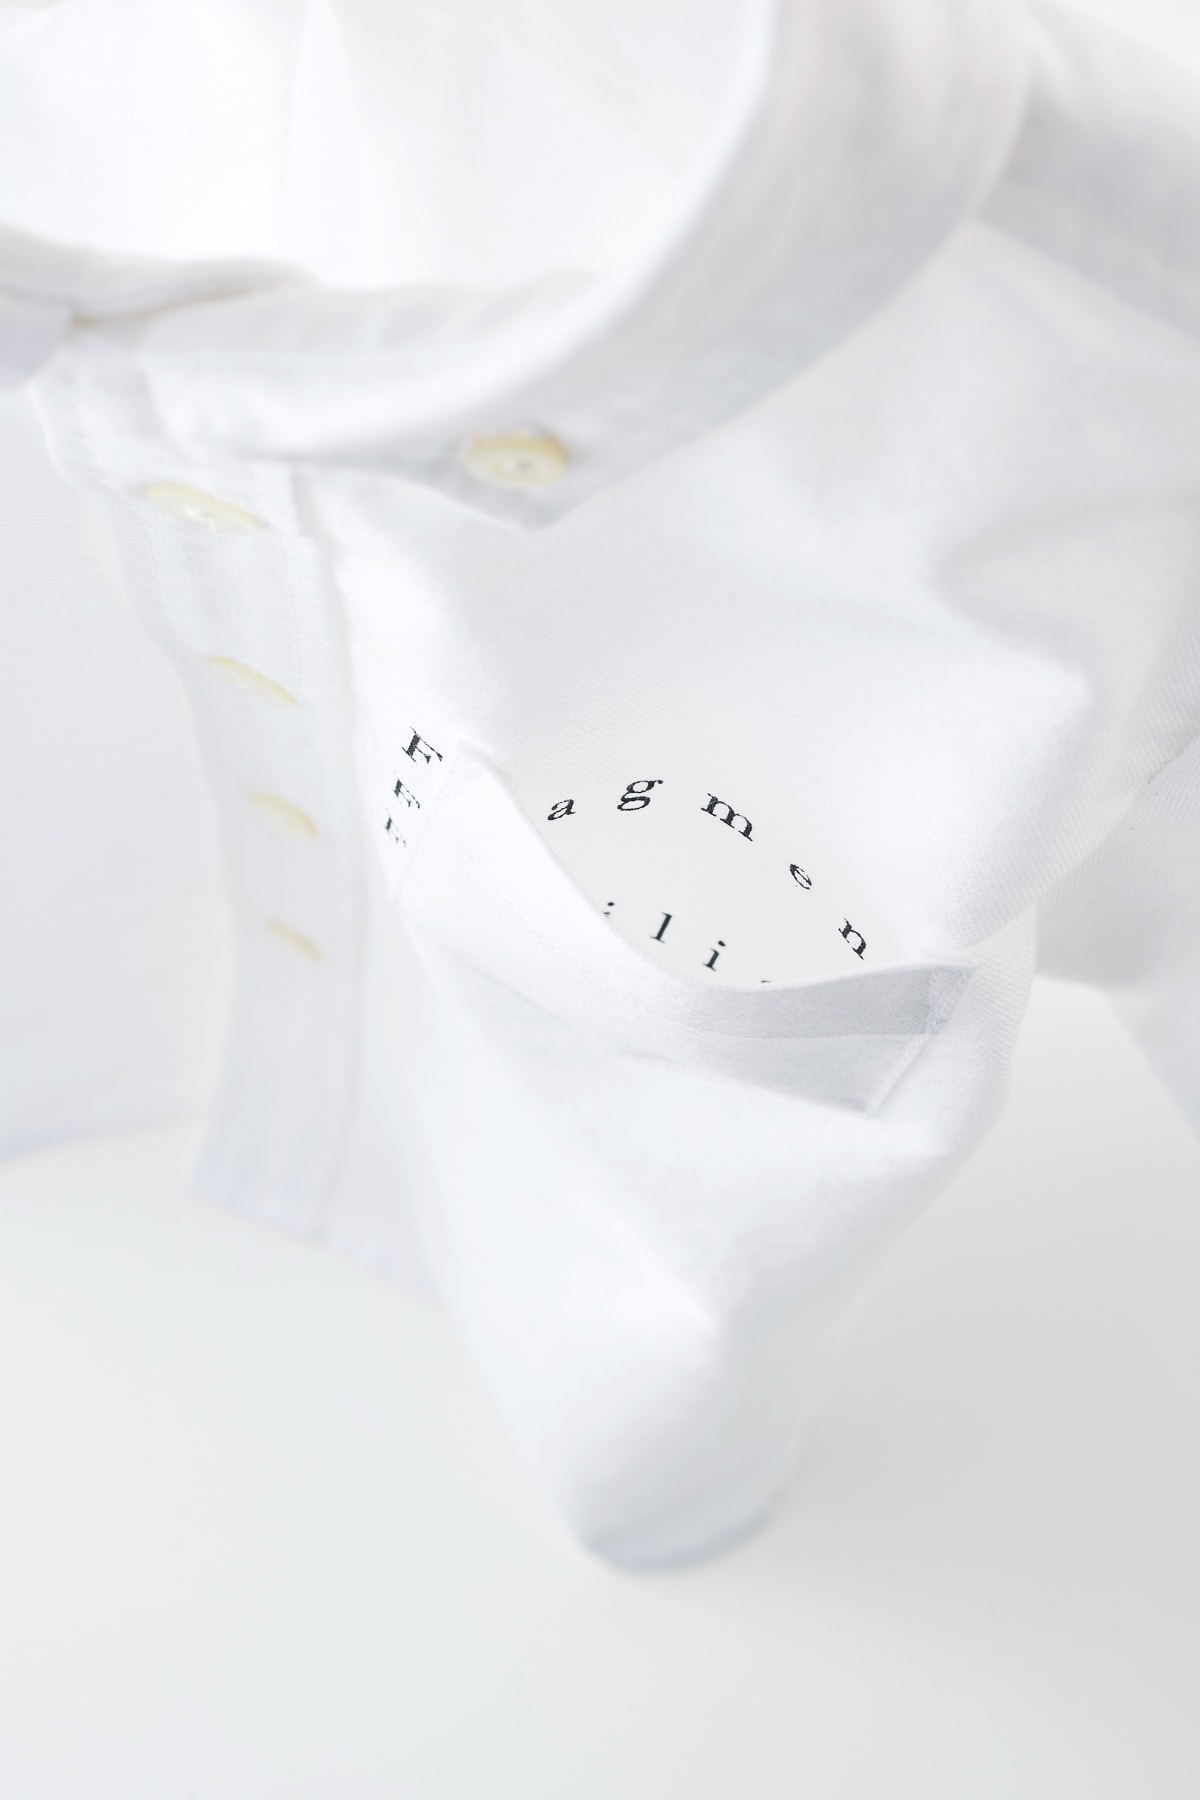 IN THE HOUSE から fragment design x familiar のコラボシャツがこどもの日に発売決定  “Fragment For Familiar”と題して子供服の第一人者的ブランドとともにボタンダウンシャツを製作